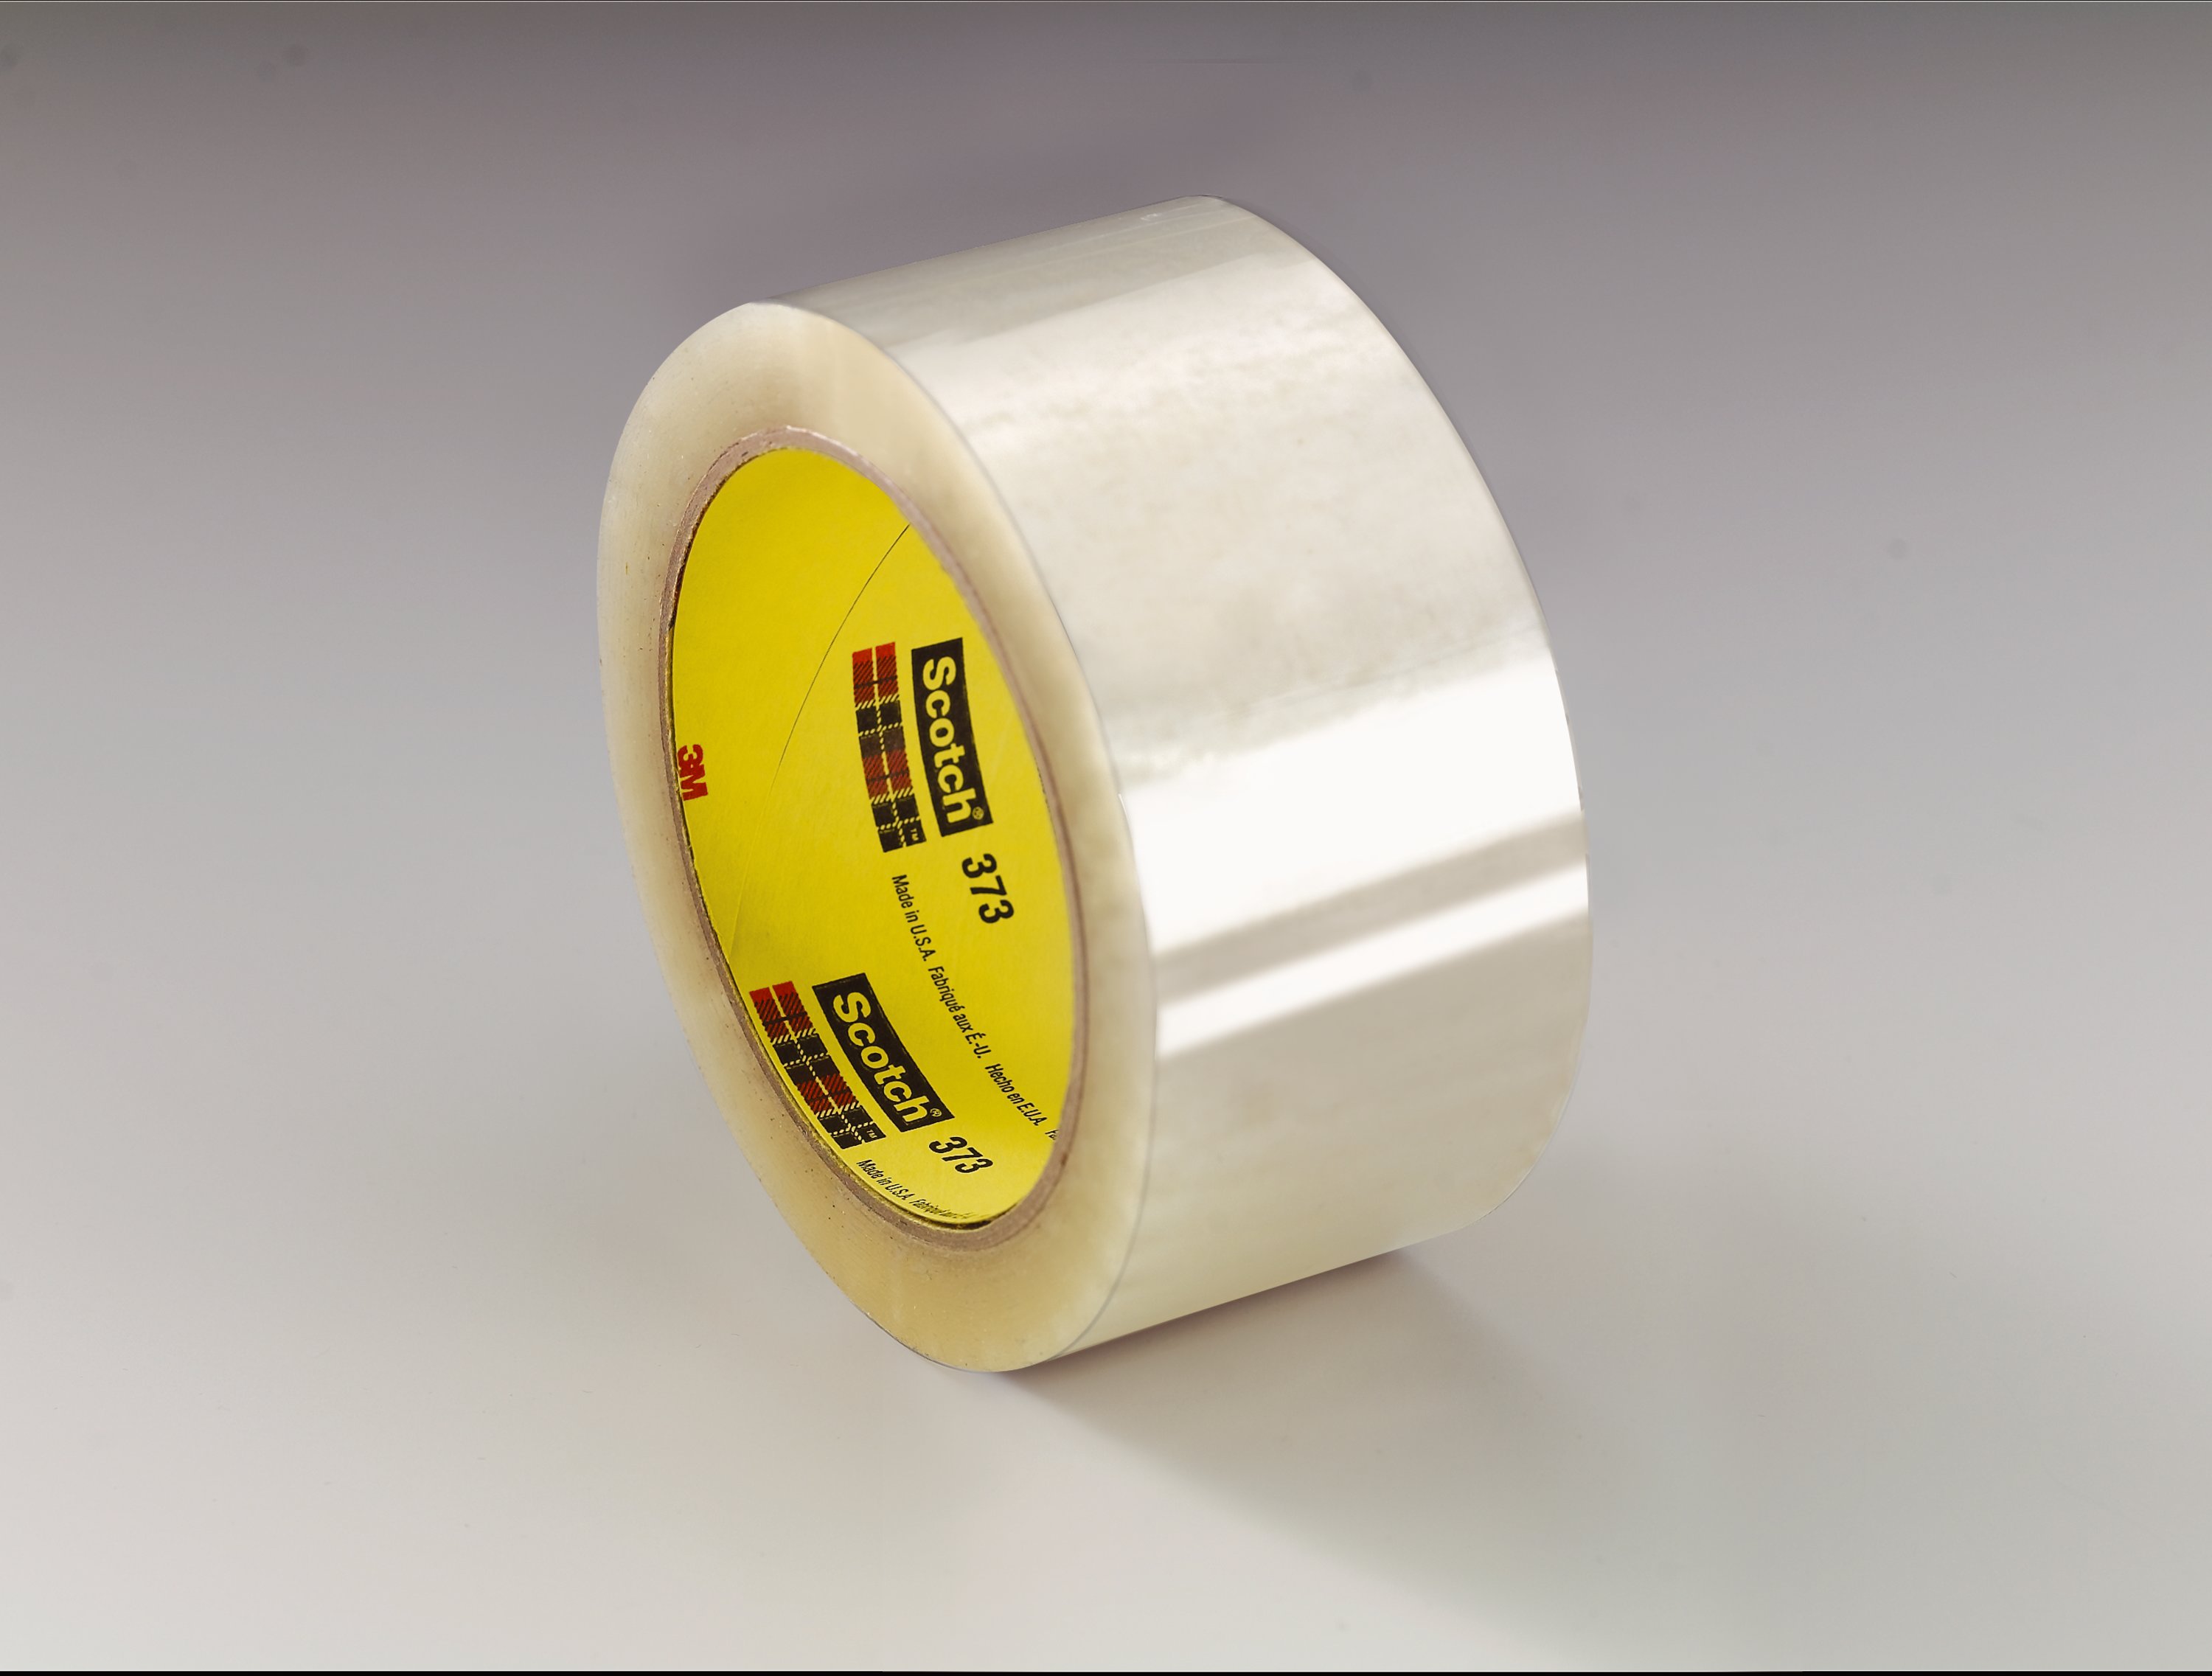 3M Scotch Box-Sealing Performance Tape, 72 mm x 100 m, Clear - 24 rolls